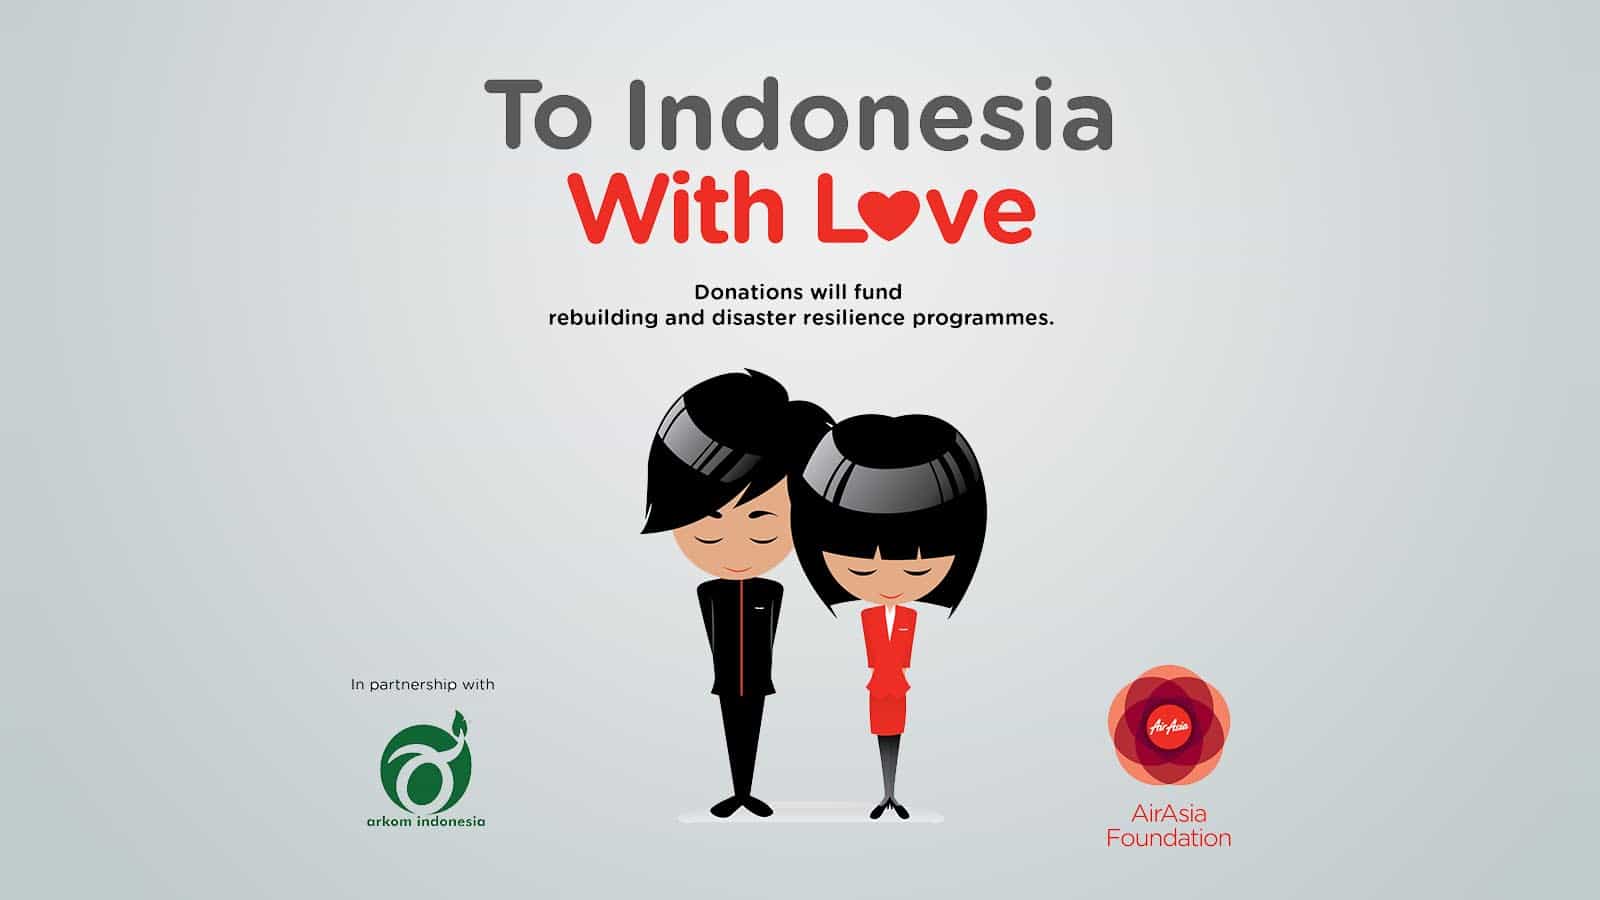 亚航启动项目帮助印尼地震灾民